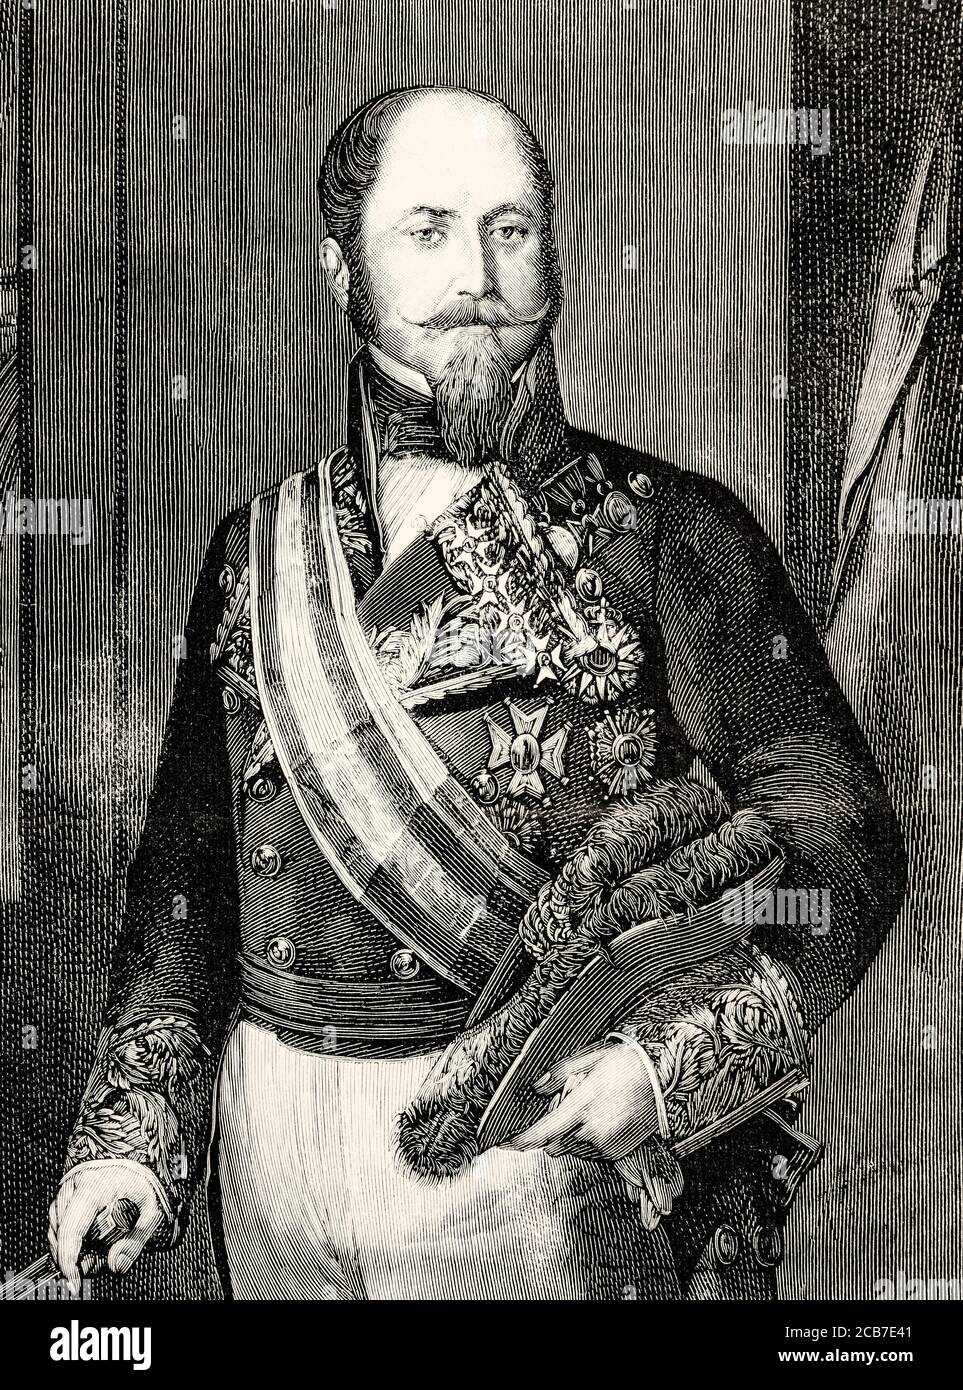 Portrait de Ricardo Shelly Comenford (1811 - 1855) lieutenant général fondateur de l'école de cavalerie de Valladolid en 1852. Illustration gravée de la Ilustracion Española y Americana datant du XIXe siècle 1894 Banque D'Images